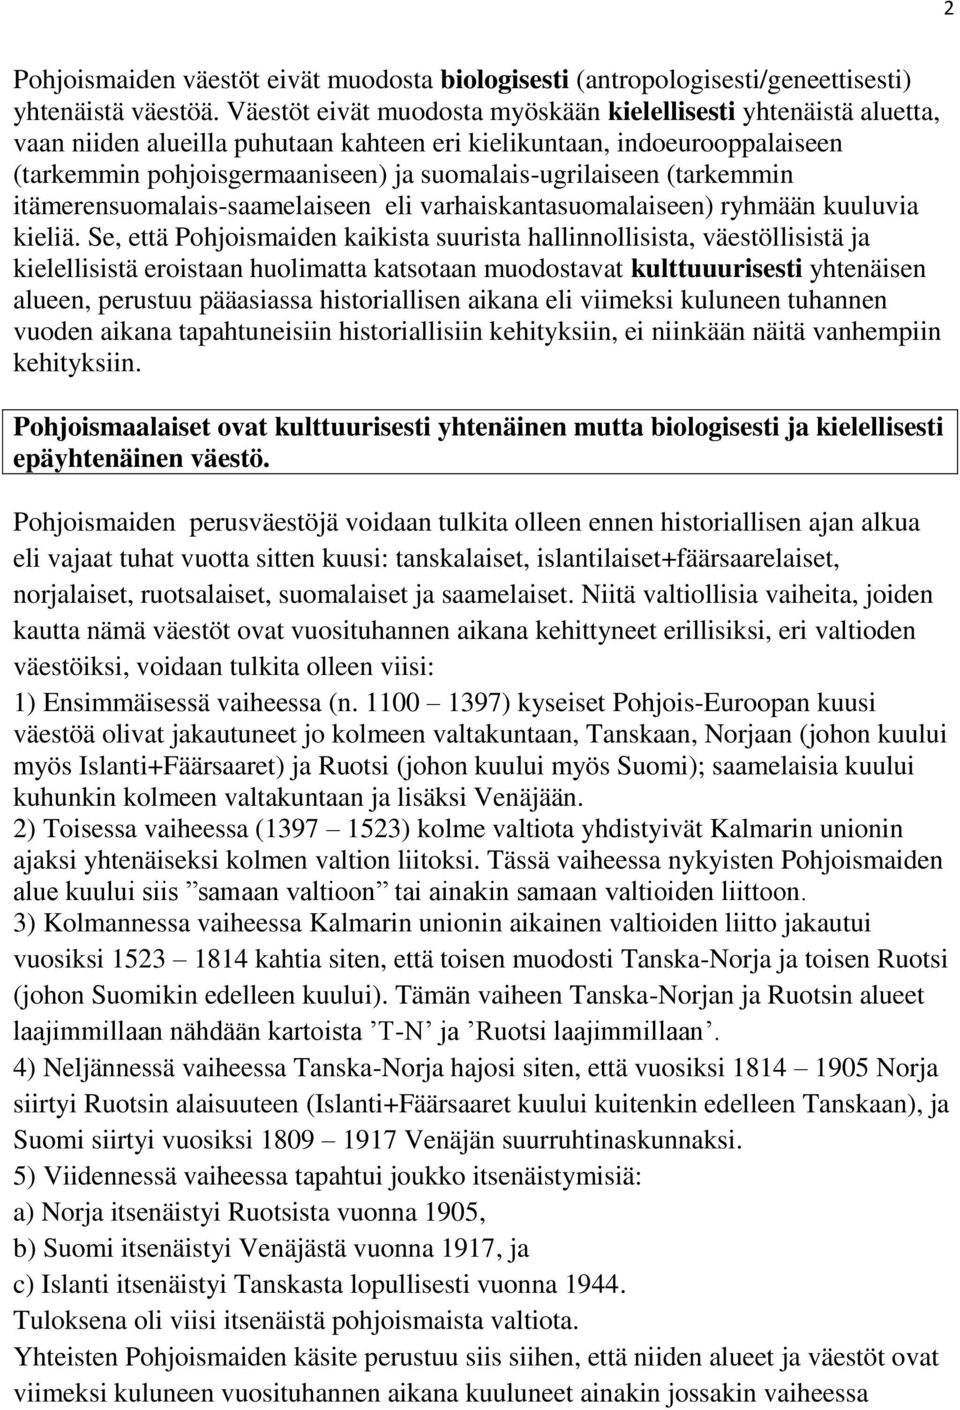 (tarkemmin itämerensuomalais-saamelaiseen eli varhaiskantasuomalaiseen) ryhmään kuuluvia kieliä.